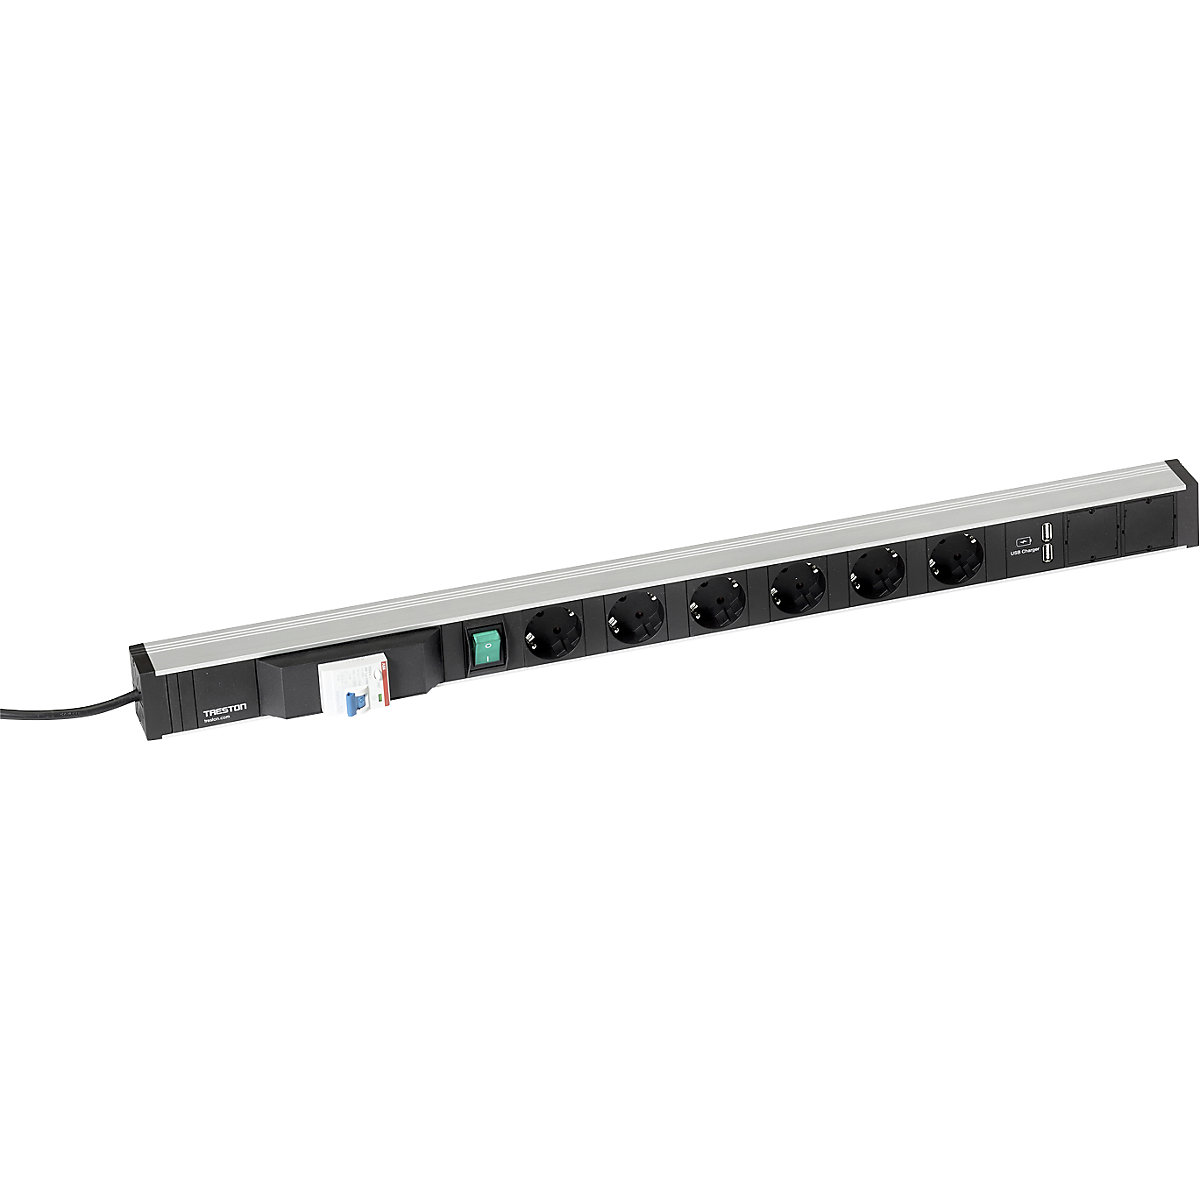 Treston – Elosztó munkaasztalokhoz, 6 aljzat, 2 db USB, áram-védőkapcsoló, 836 mm-es hossz